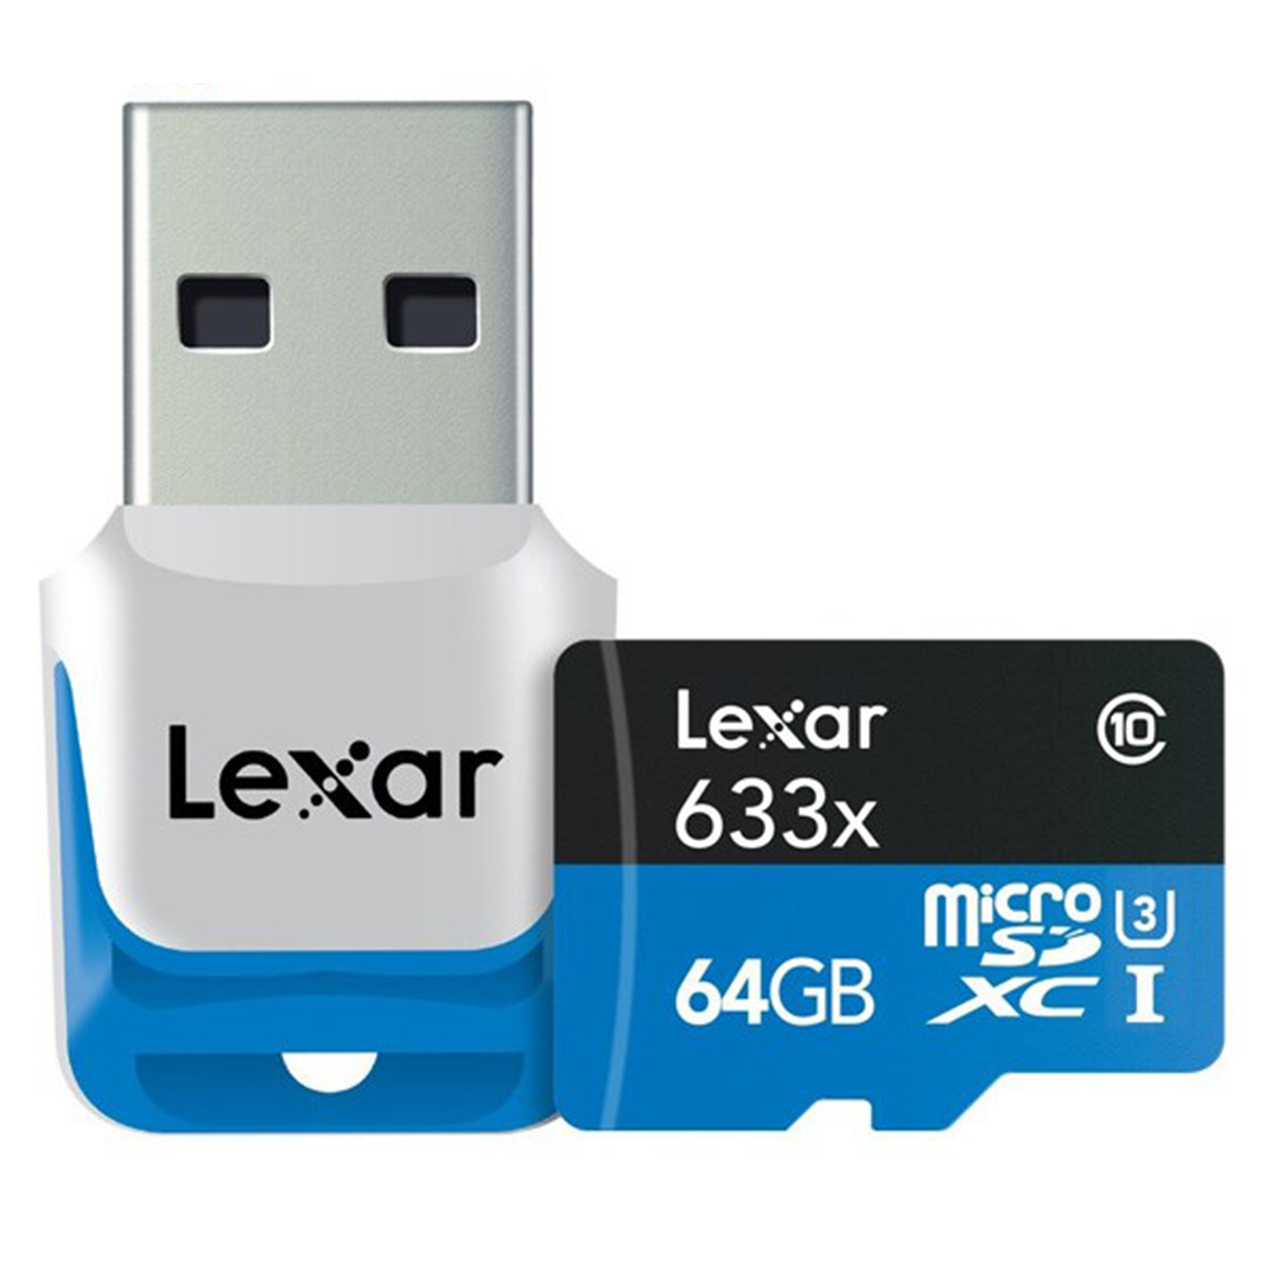 کارت حافظه microSDXC لکسار مدل High-Performance کلاس 10 استاندارد UHS-I U3 سرعت 633X همراه با ریدر USB 3.0 ظرفیت 64 گیگابایت